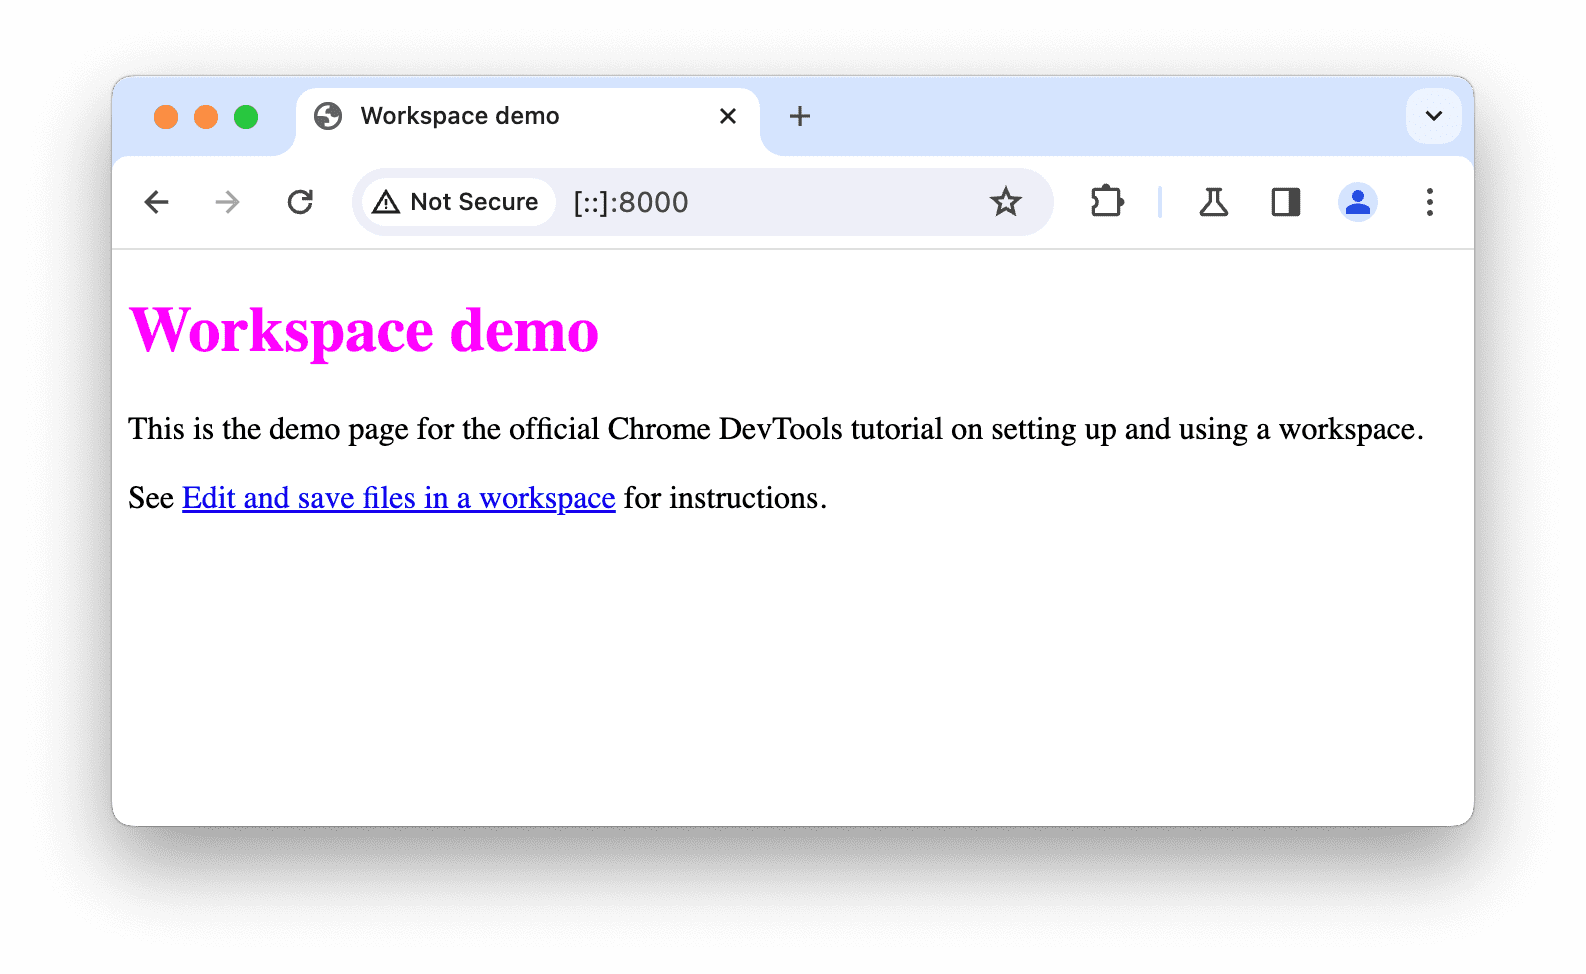 स्थानीय तौर पर होस्ट किया गया डेमो पेज, Chrome में खुला है.